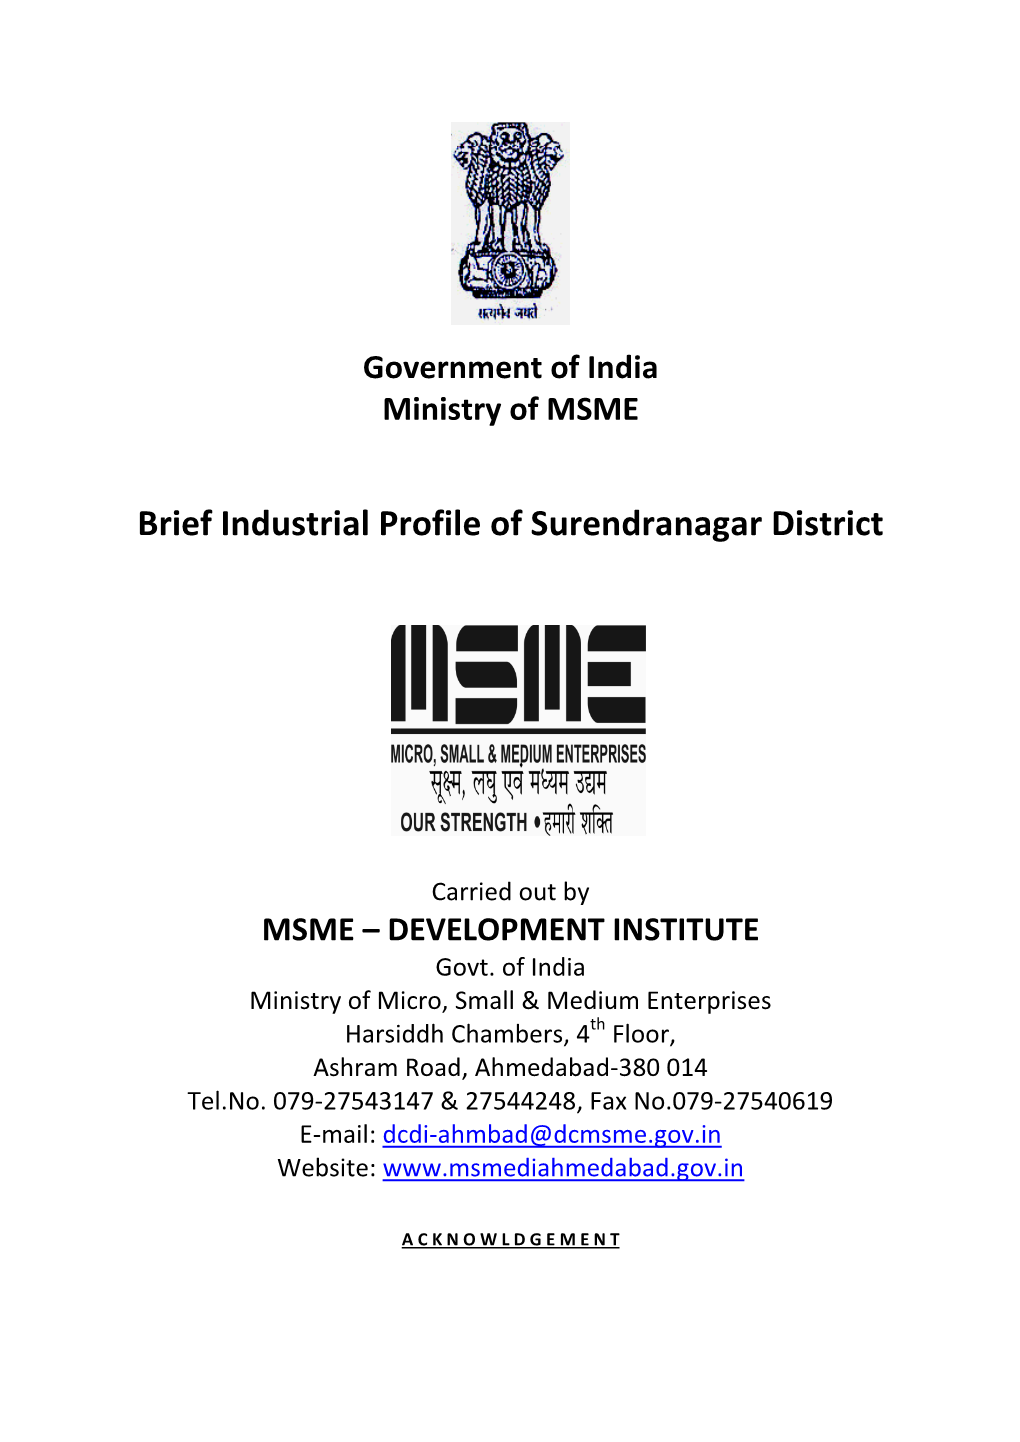 Brief Industrial Profile of Surendranagar District